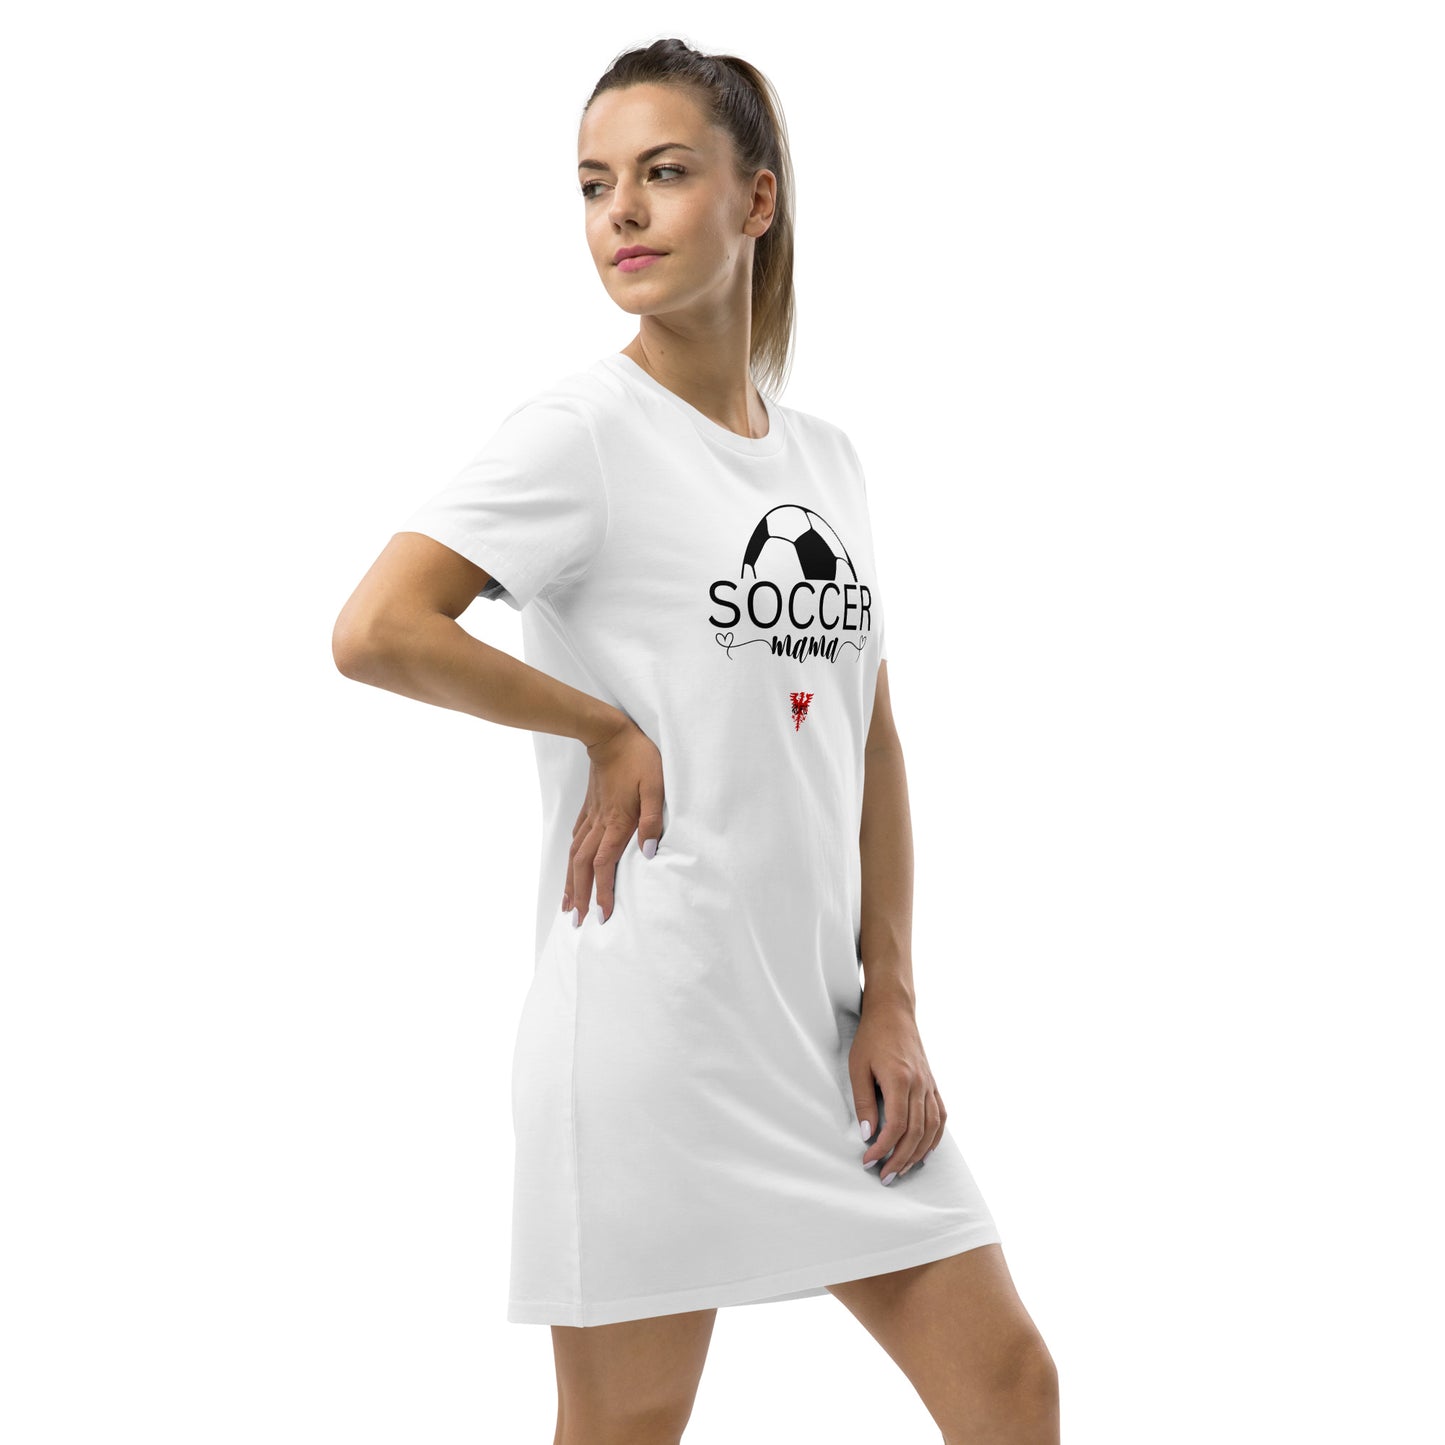 RUFC Soccer Mama Cotton t-shirt dress